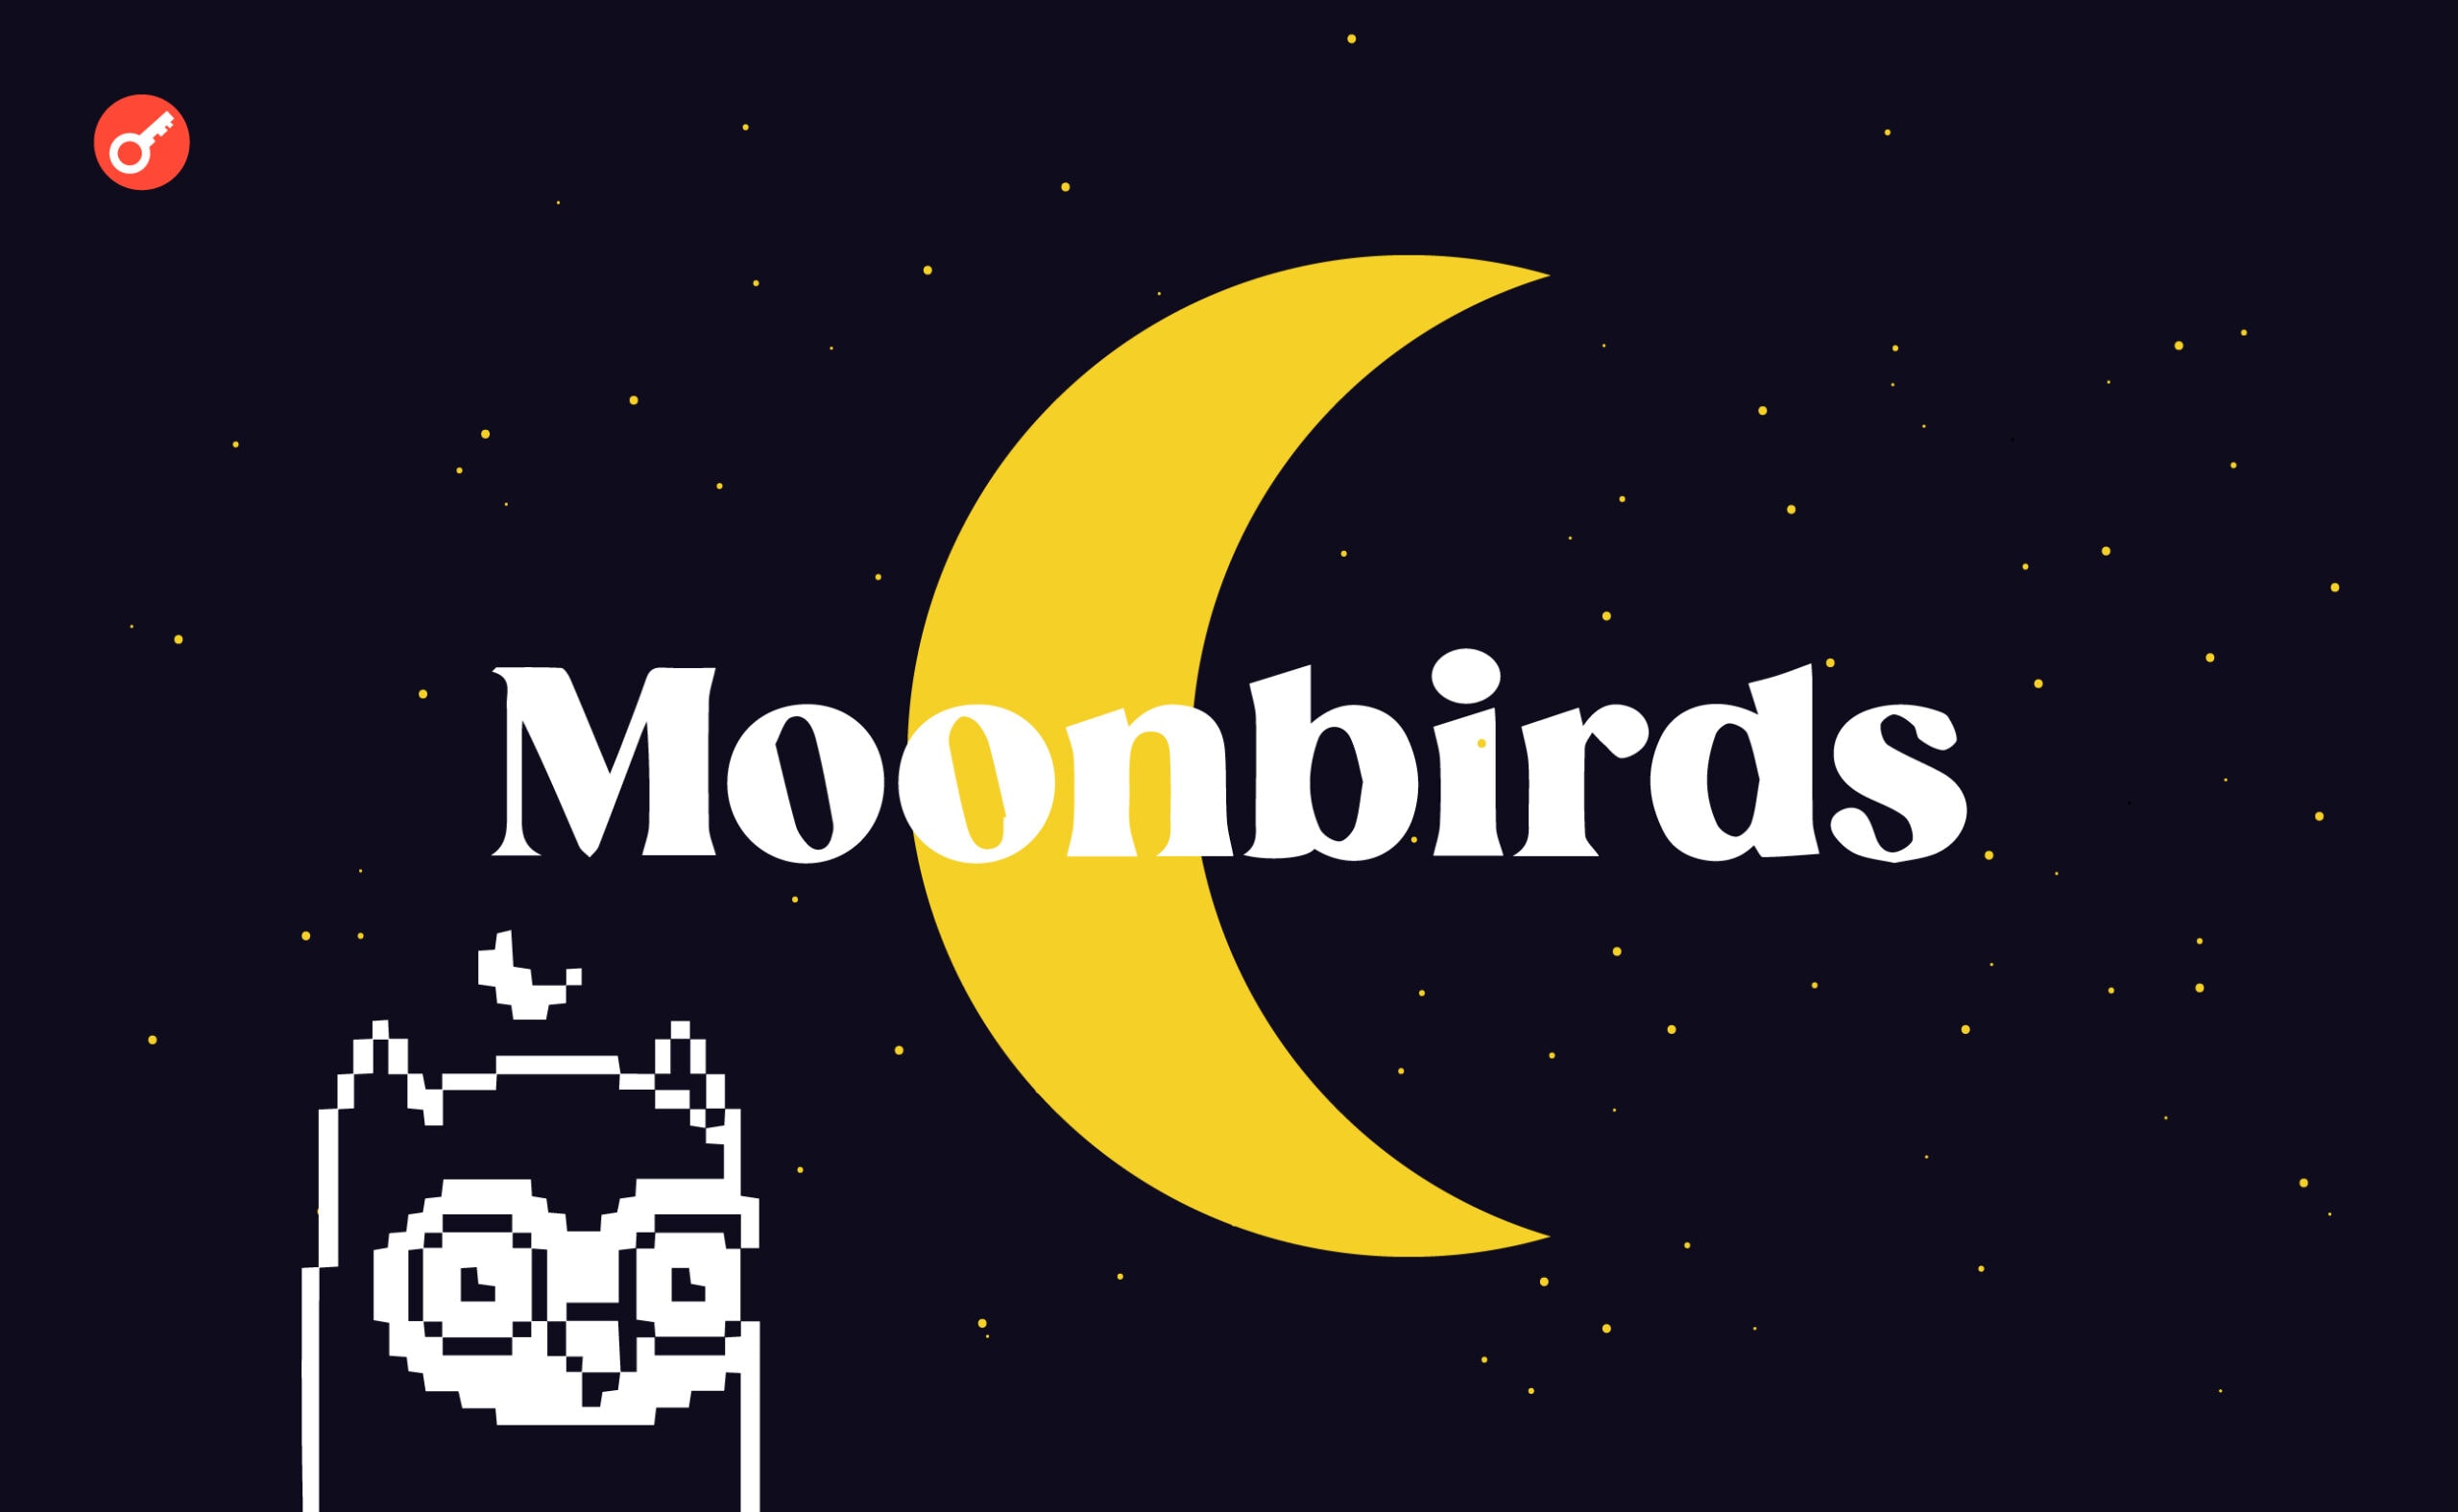 Moonbirds готовит премиальную NFT-коллекцию. Заглавный коллаж новости.